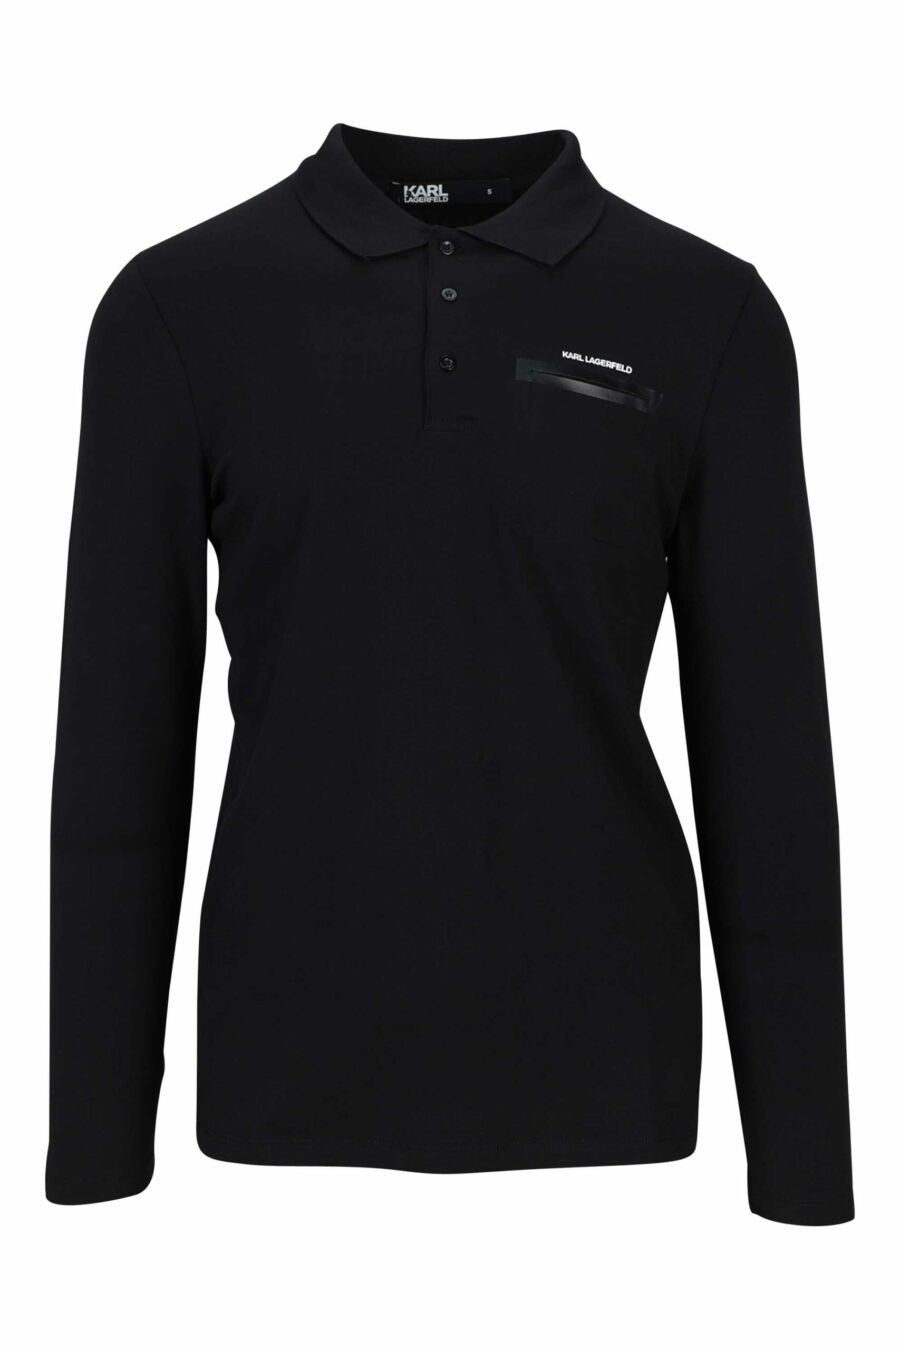 Langärmeliges schwarzes Poloshirt mit Tasche - 4062226690515 1 skaliert